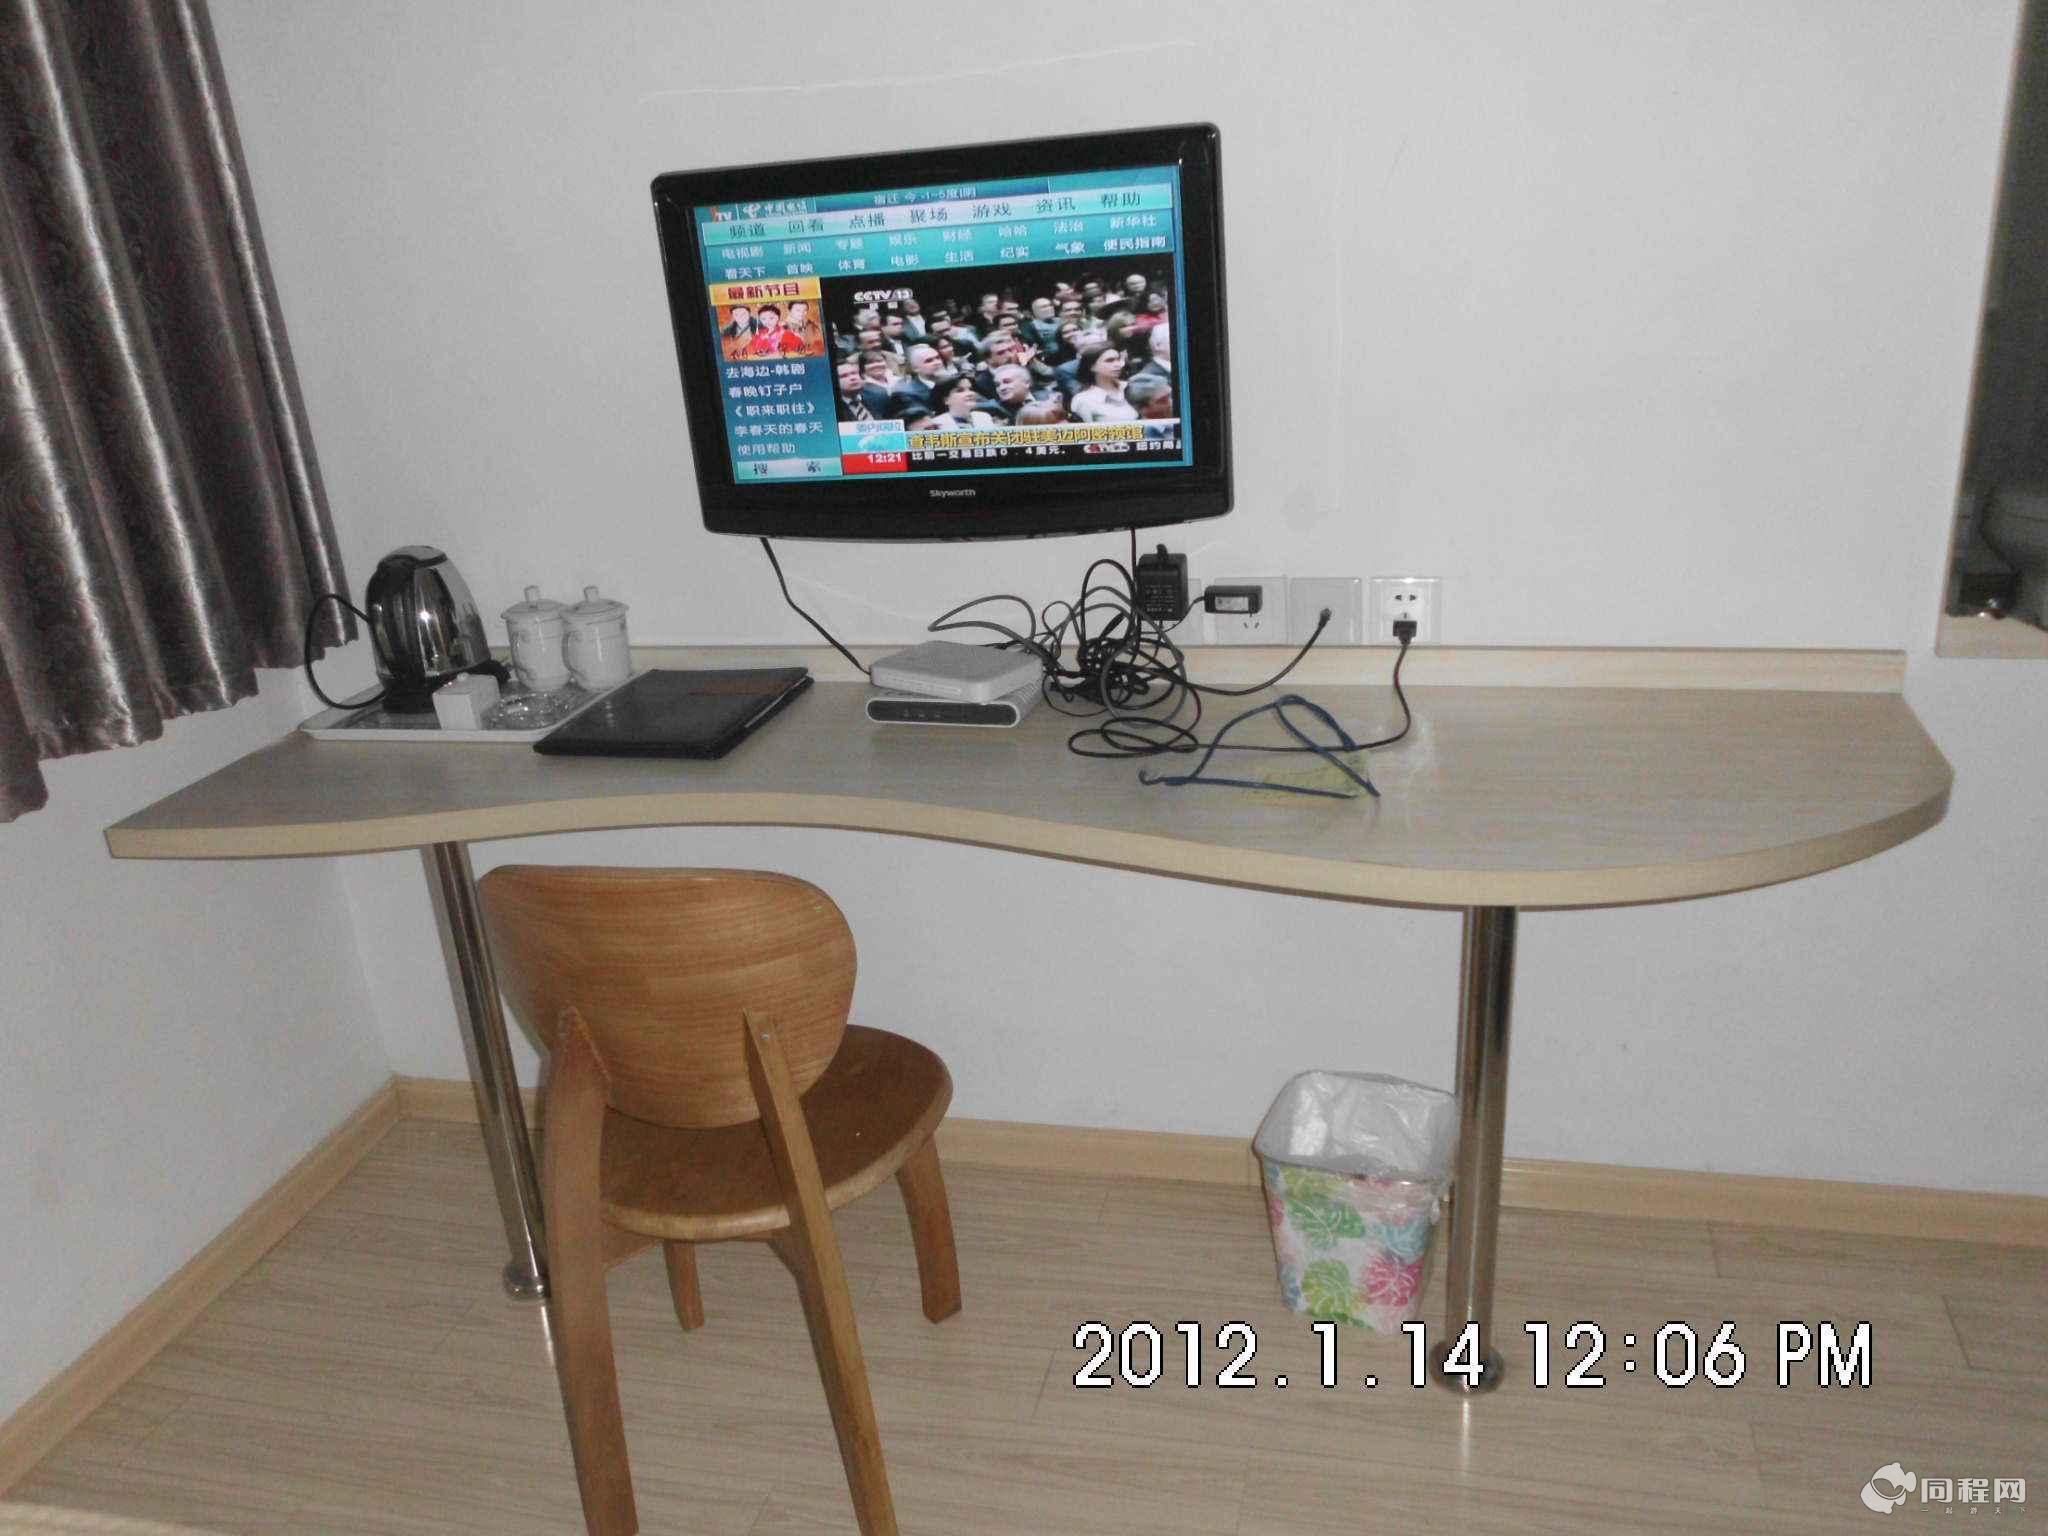 南京麦森快捷酒店图片办公桌、电视[由15095hsyphb提供]